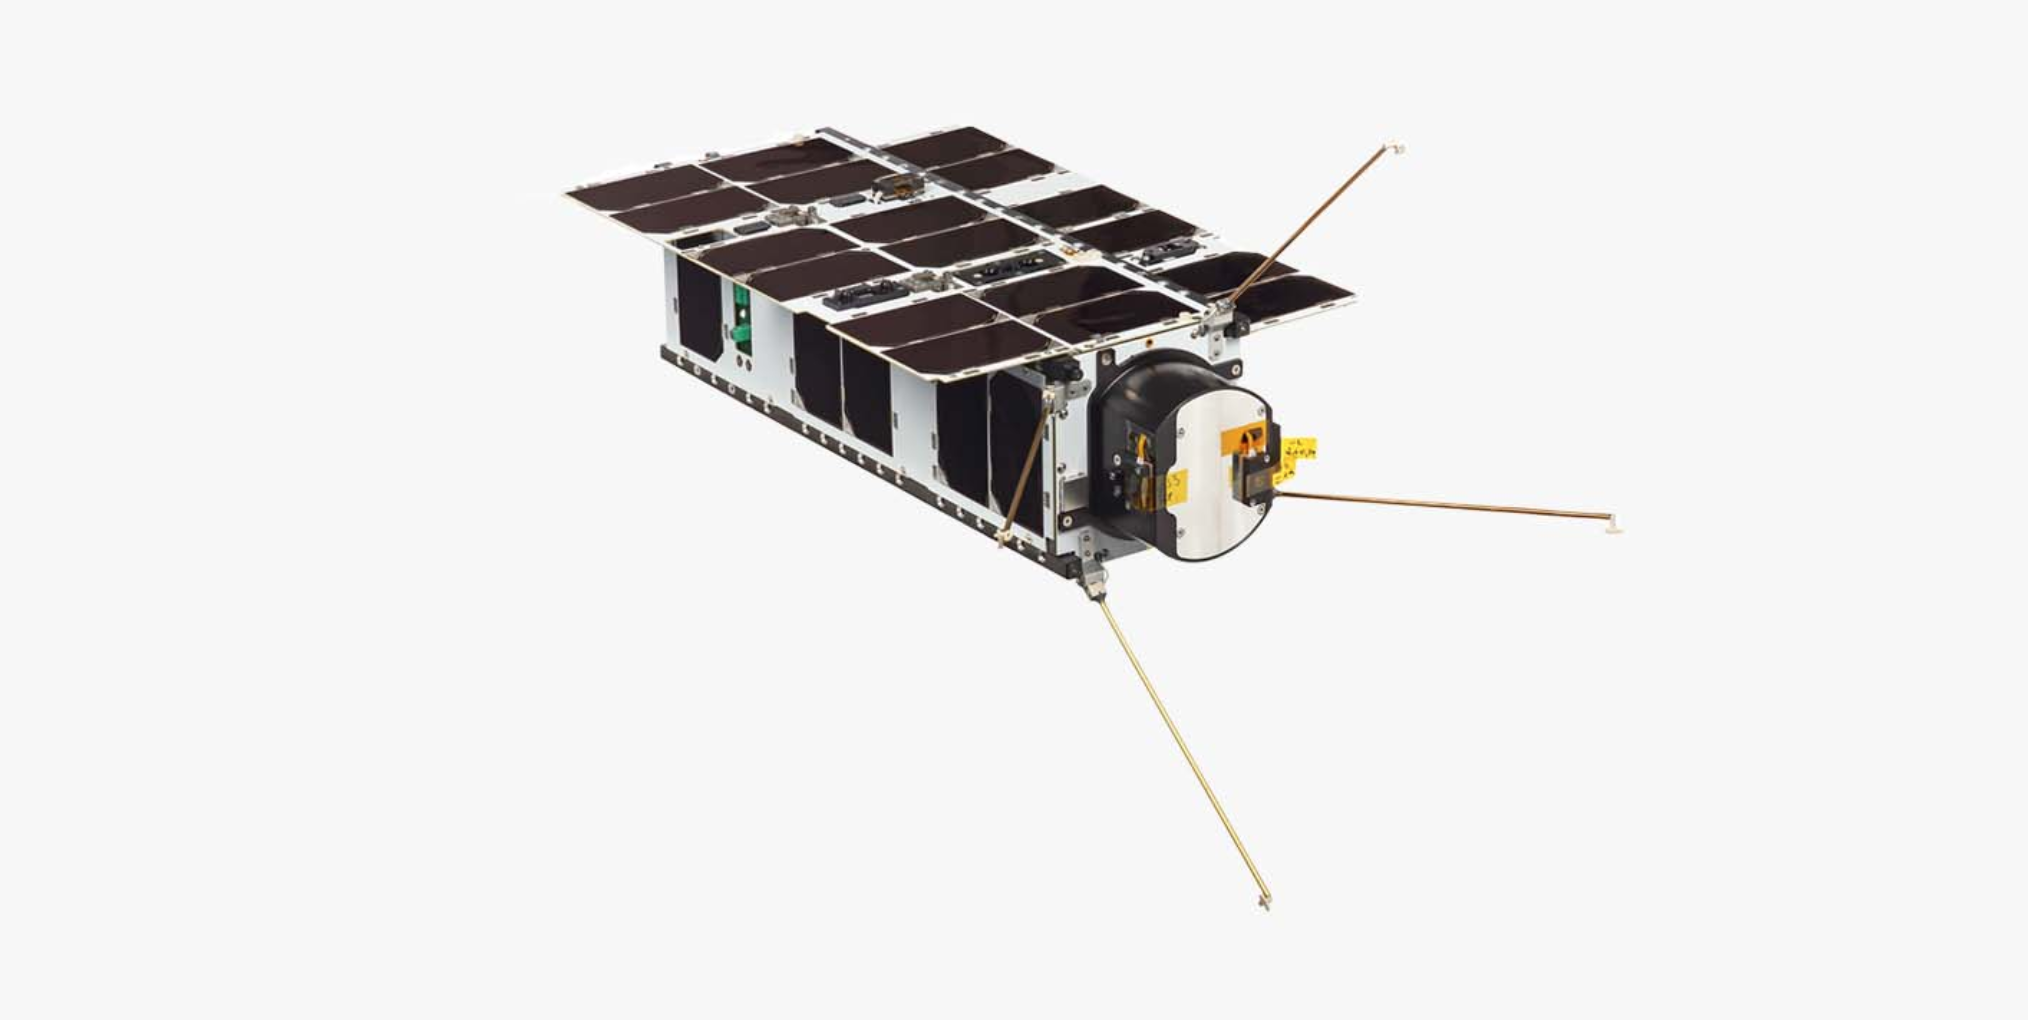 NanoAvionics satellite